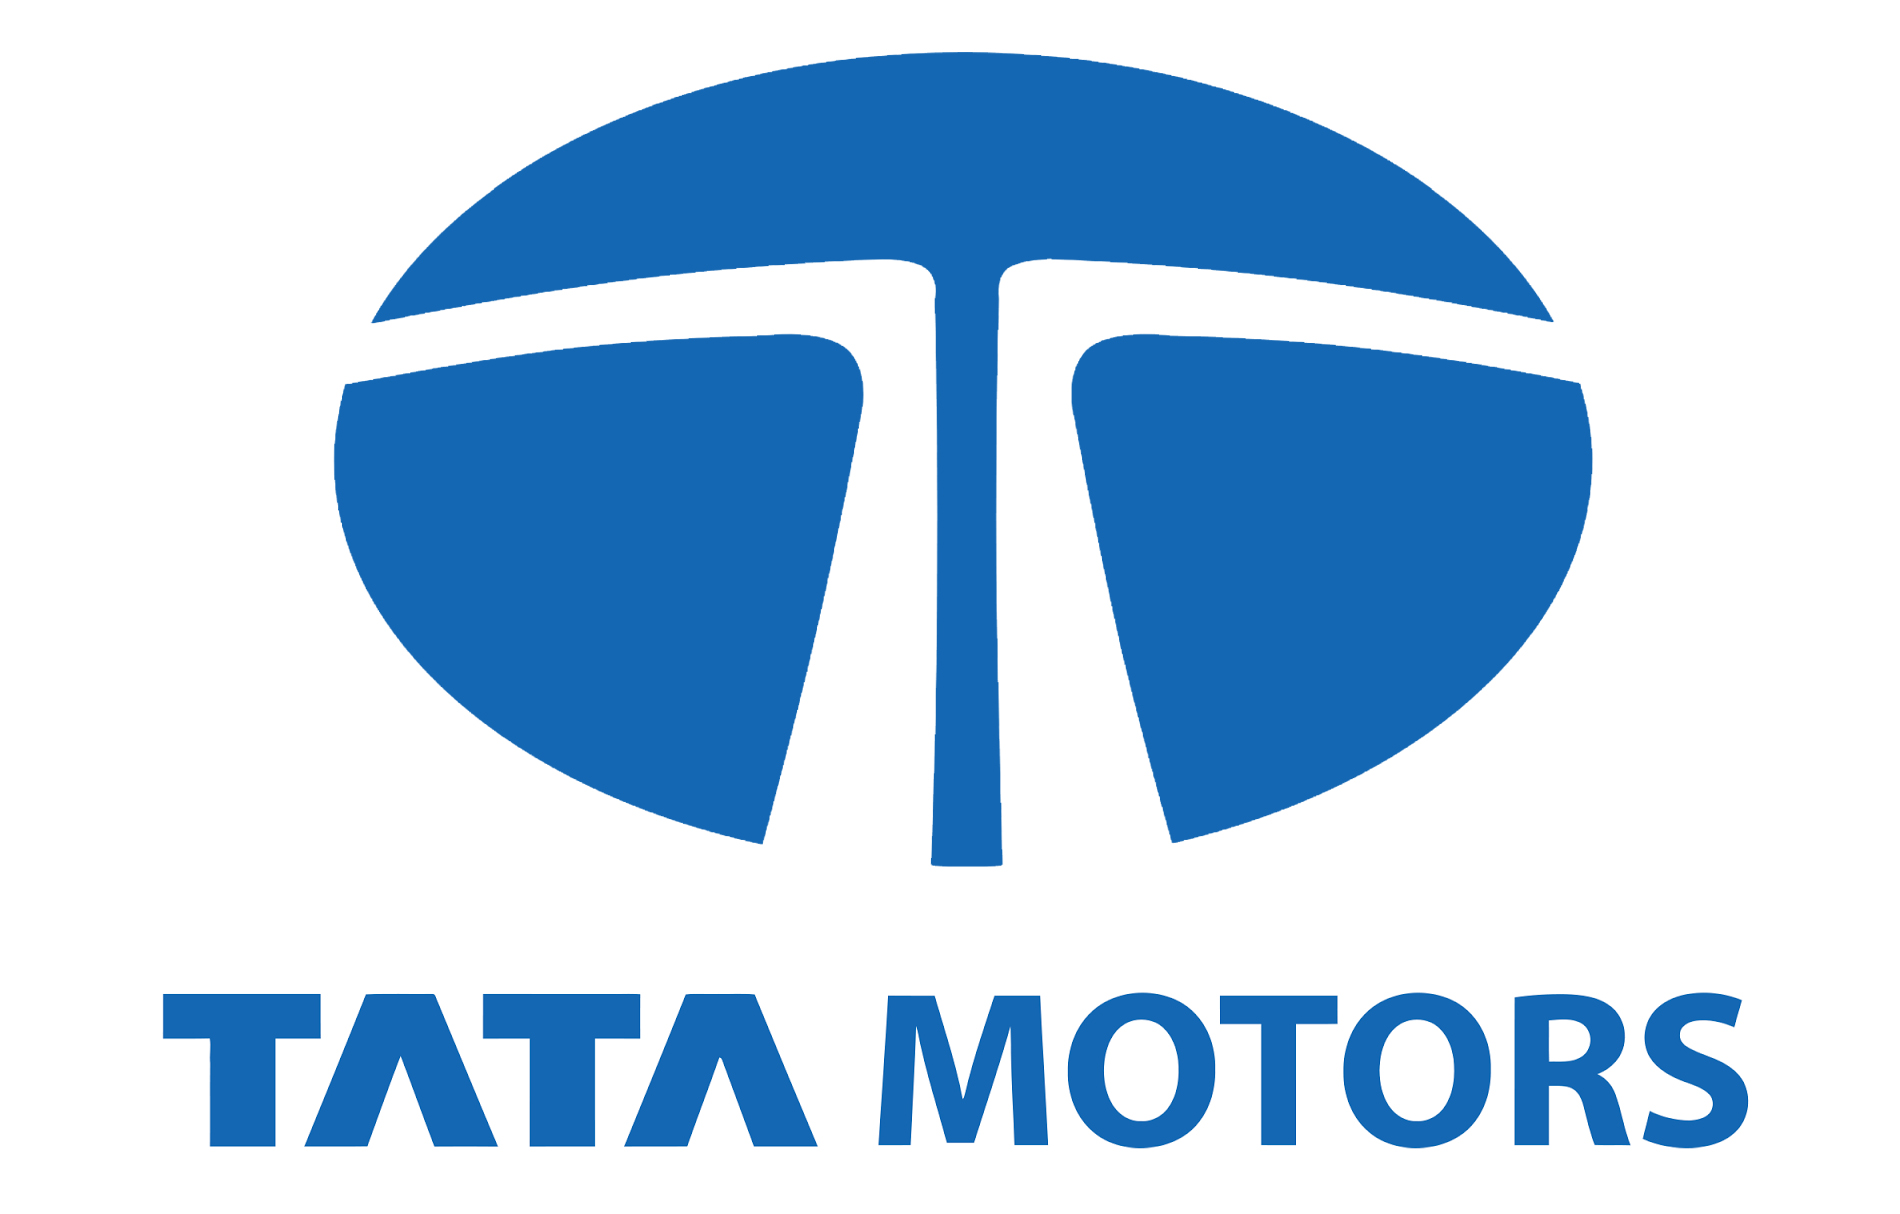 Tata Motors Cars Showroom - A G Motors|Show Room|Automotive